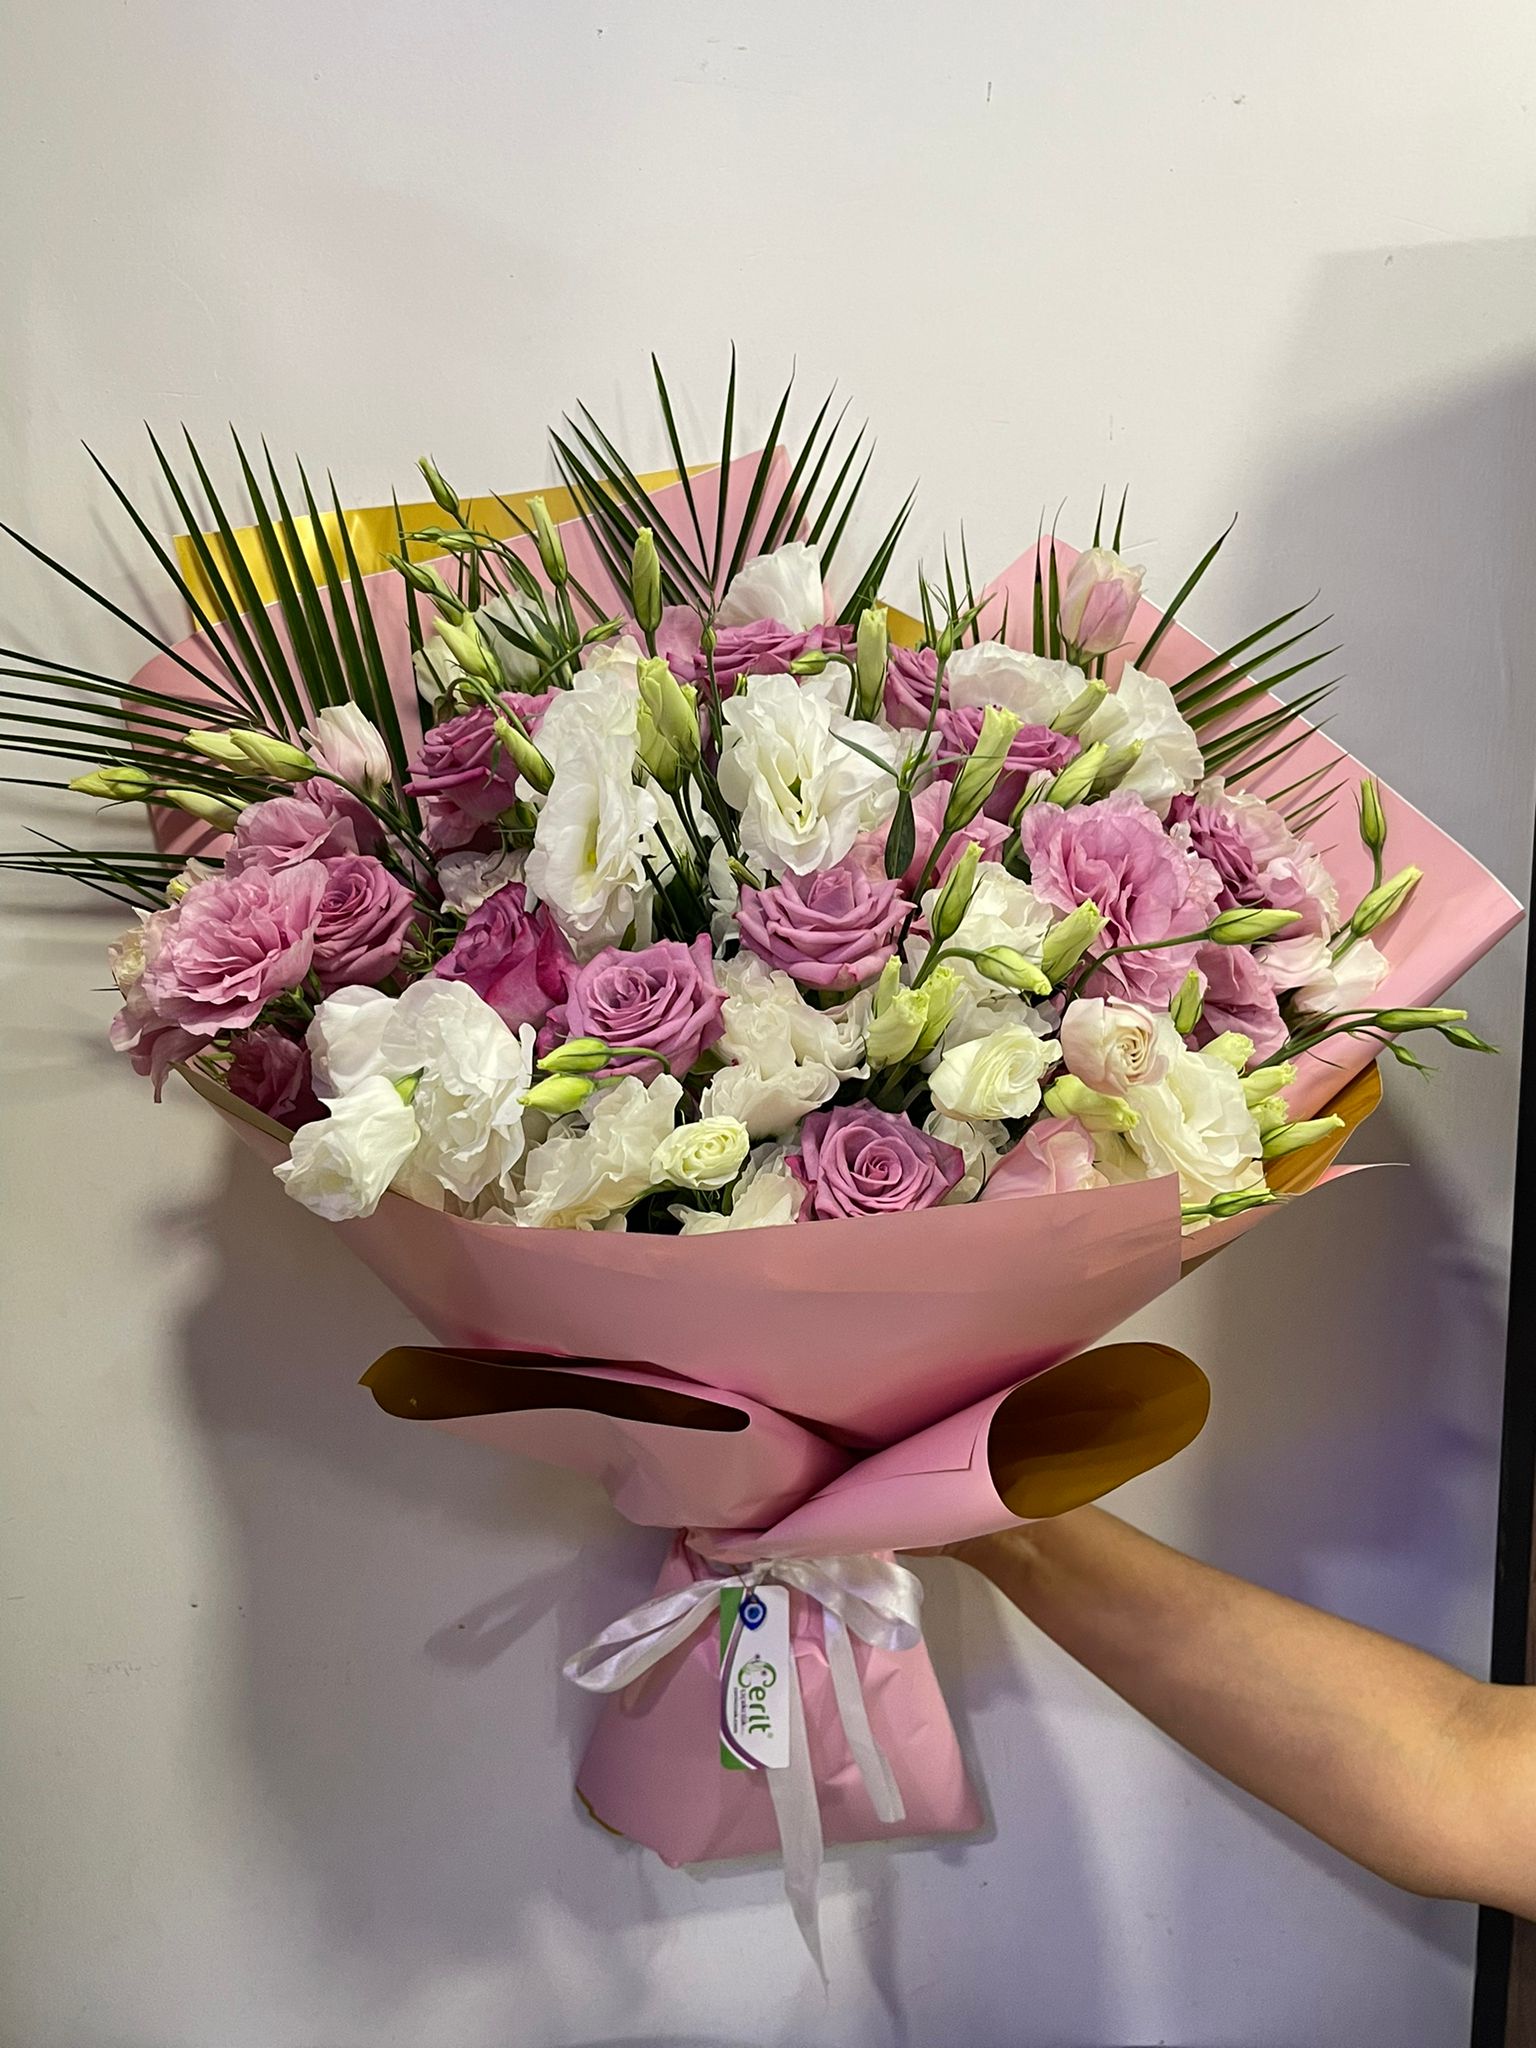  Kemer Blumenbestellung Lisyantus Pink White Elegant Bouquet